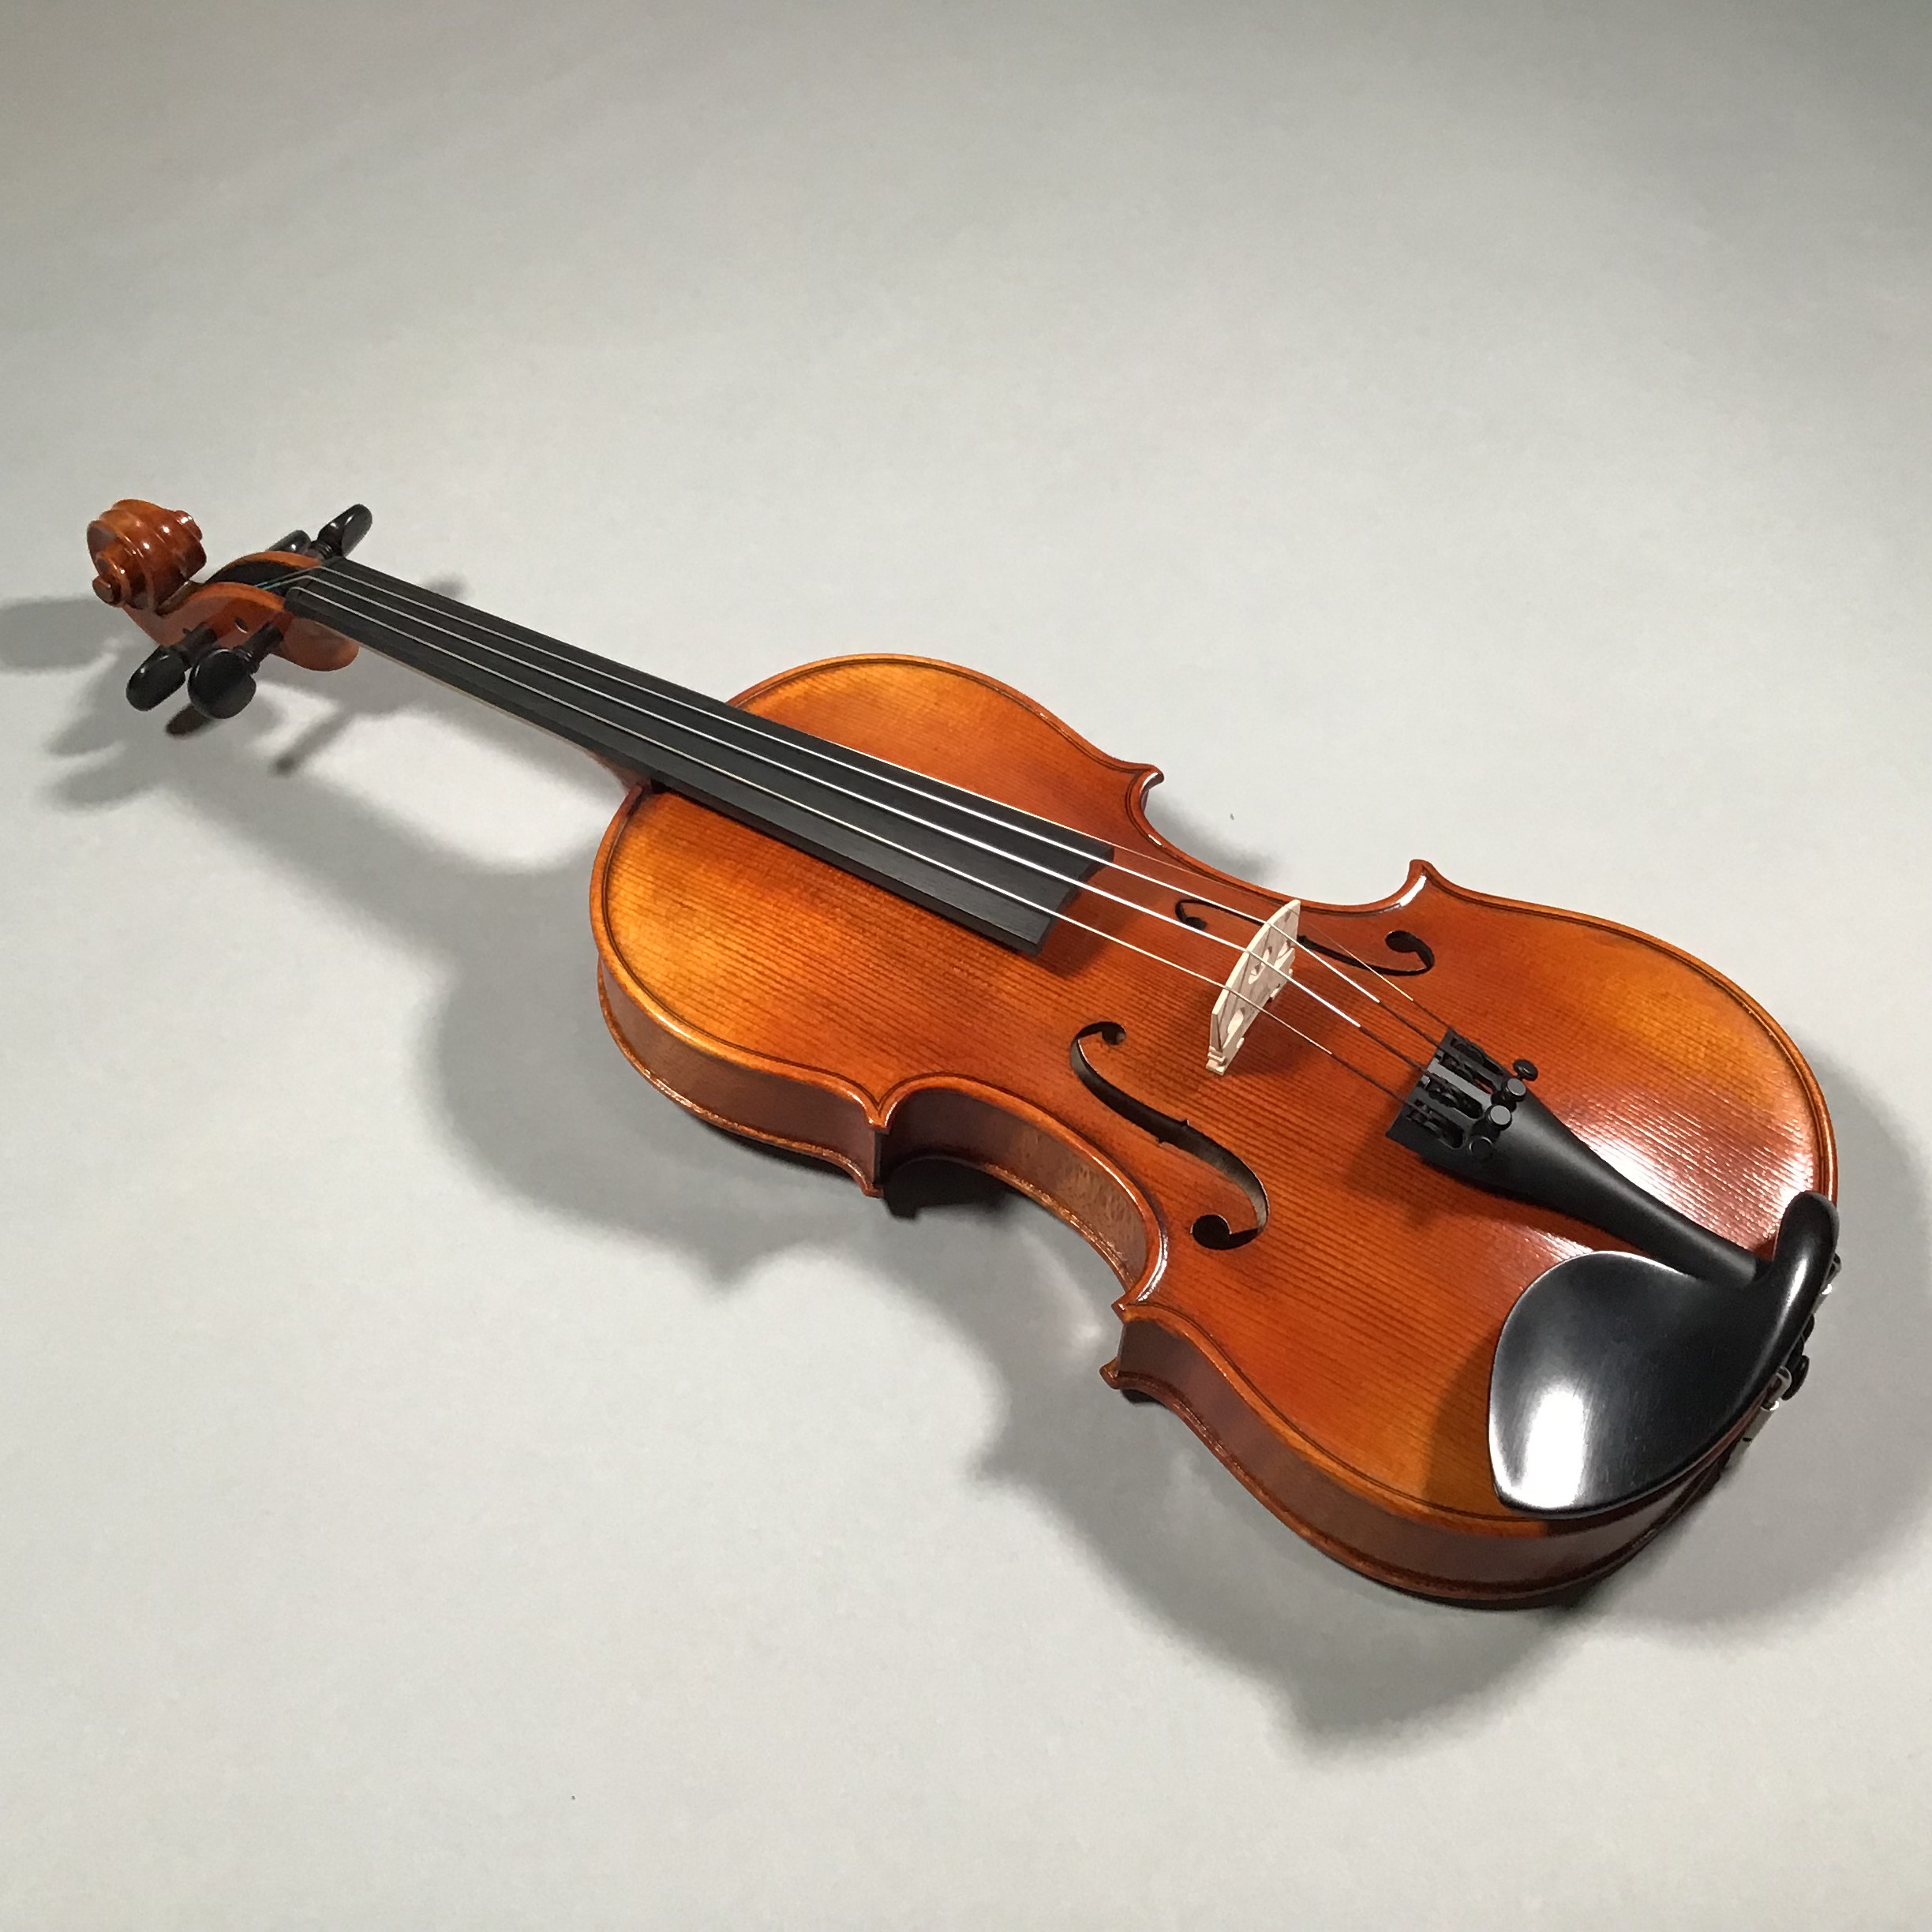 【弦楽器】当店展示中のヴァイオリンのご紹介です♪ - 仙台ロフト店 店舗情報-島村楽器